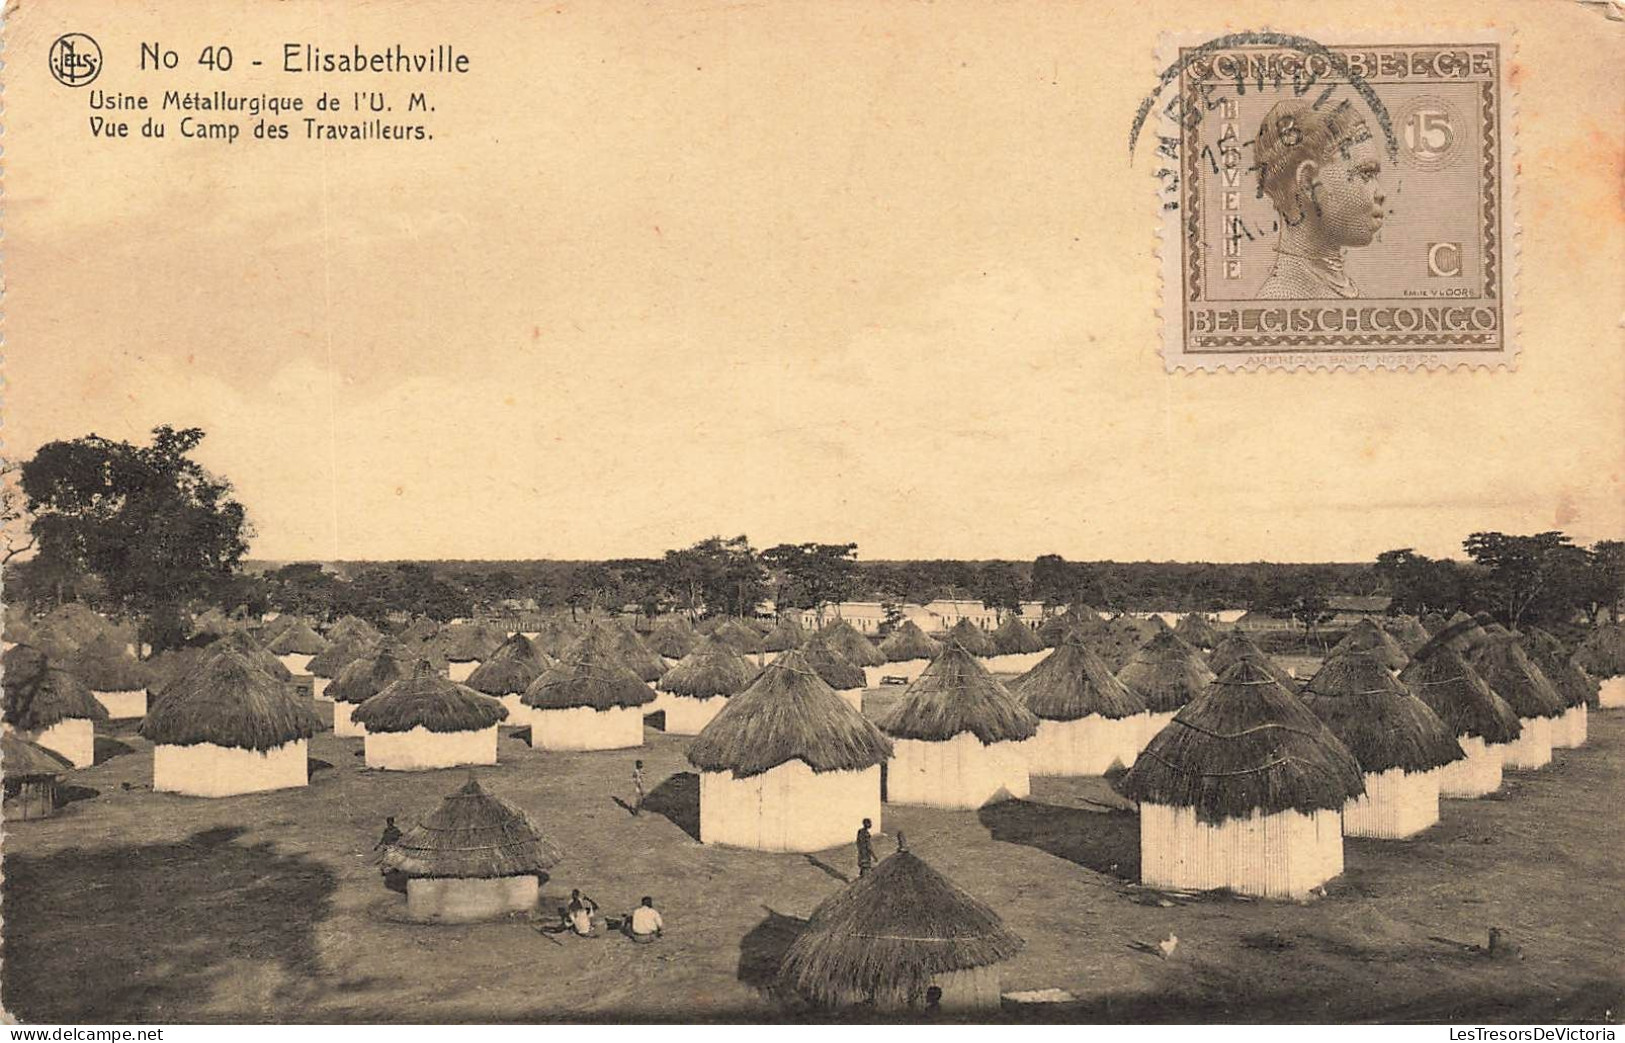 CONGO BELGE - Elisabethville - Usine Métallurgie De L'U.M - Vue Du Camp Des Travailleurs - Carte Postale Ancienne - Belgian Congo